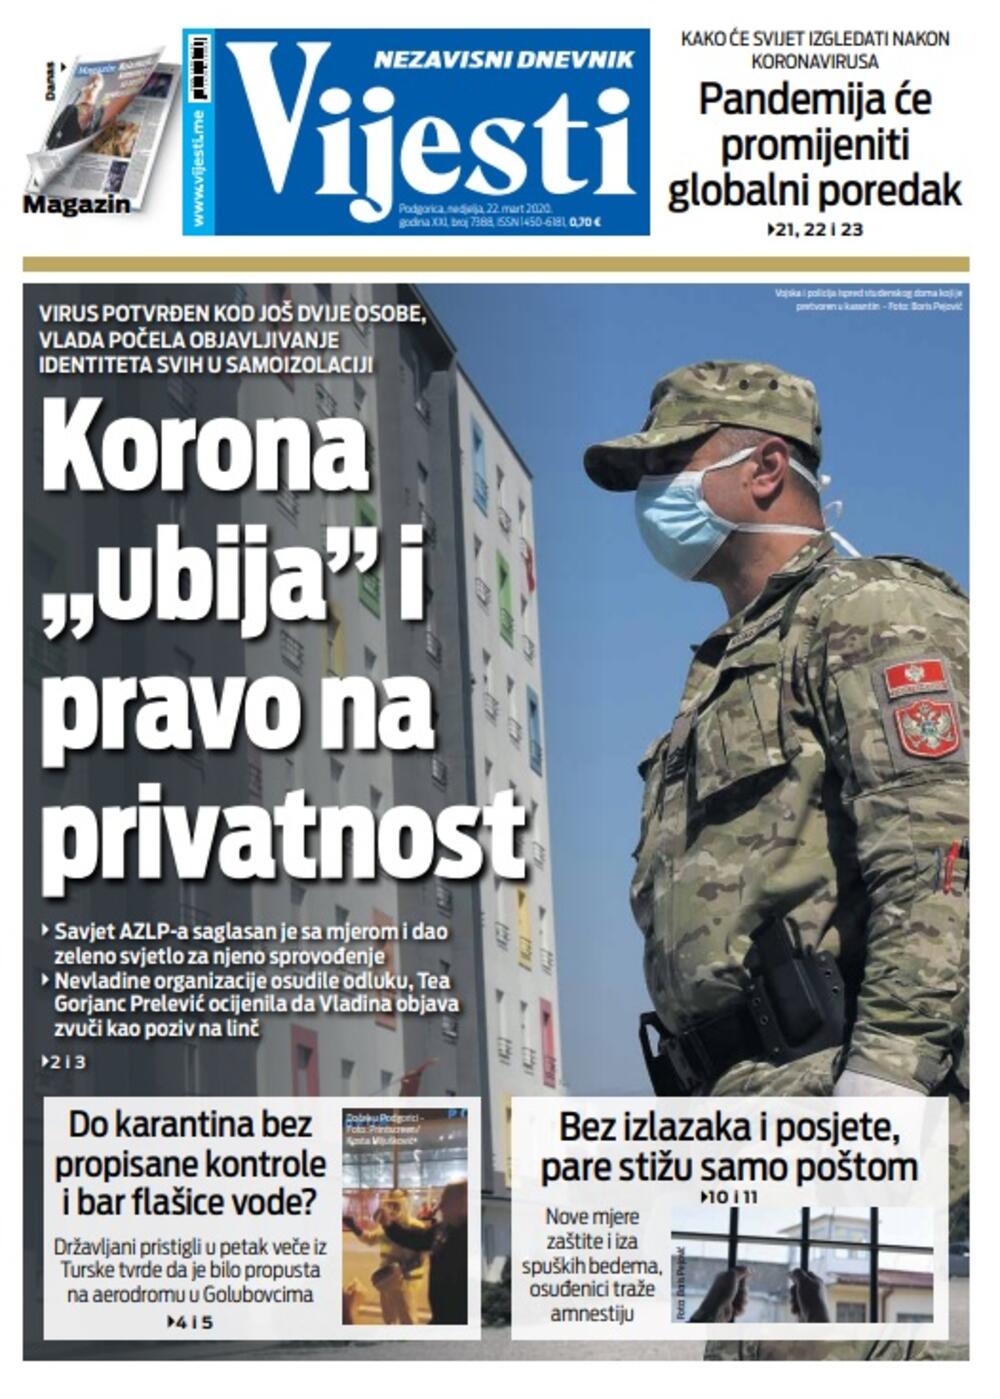 Naslovna strana "Vijesti" za 22. mart 2020. godine, Foto: Vijesti